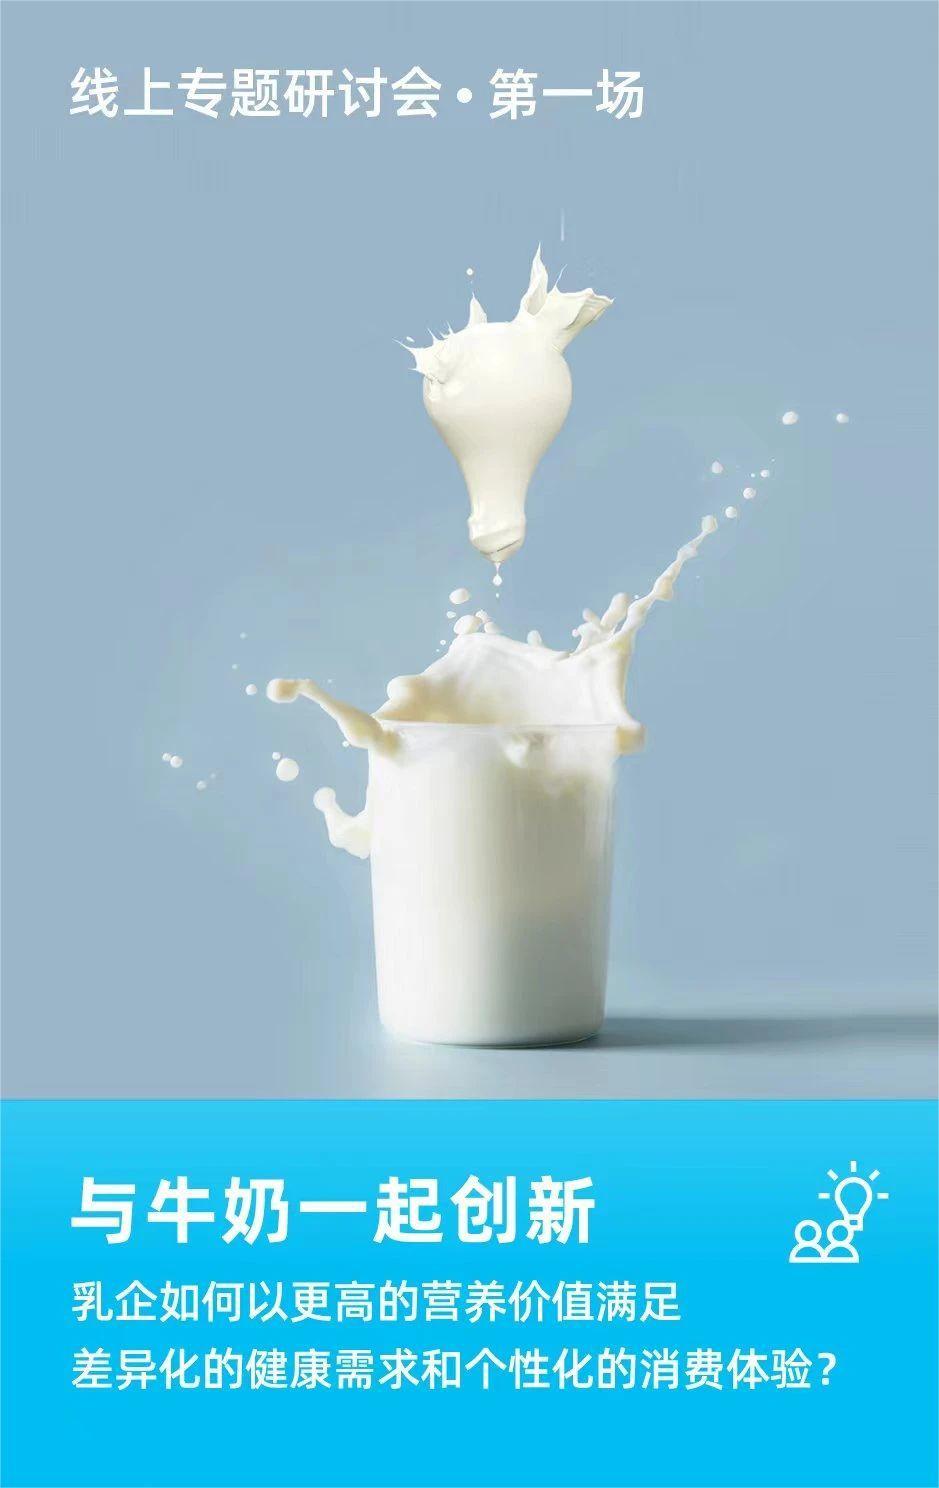 1来源：华经产业研究院《2021年中国乳制品市场规模、供需现状及行业发展趋势》